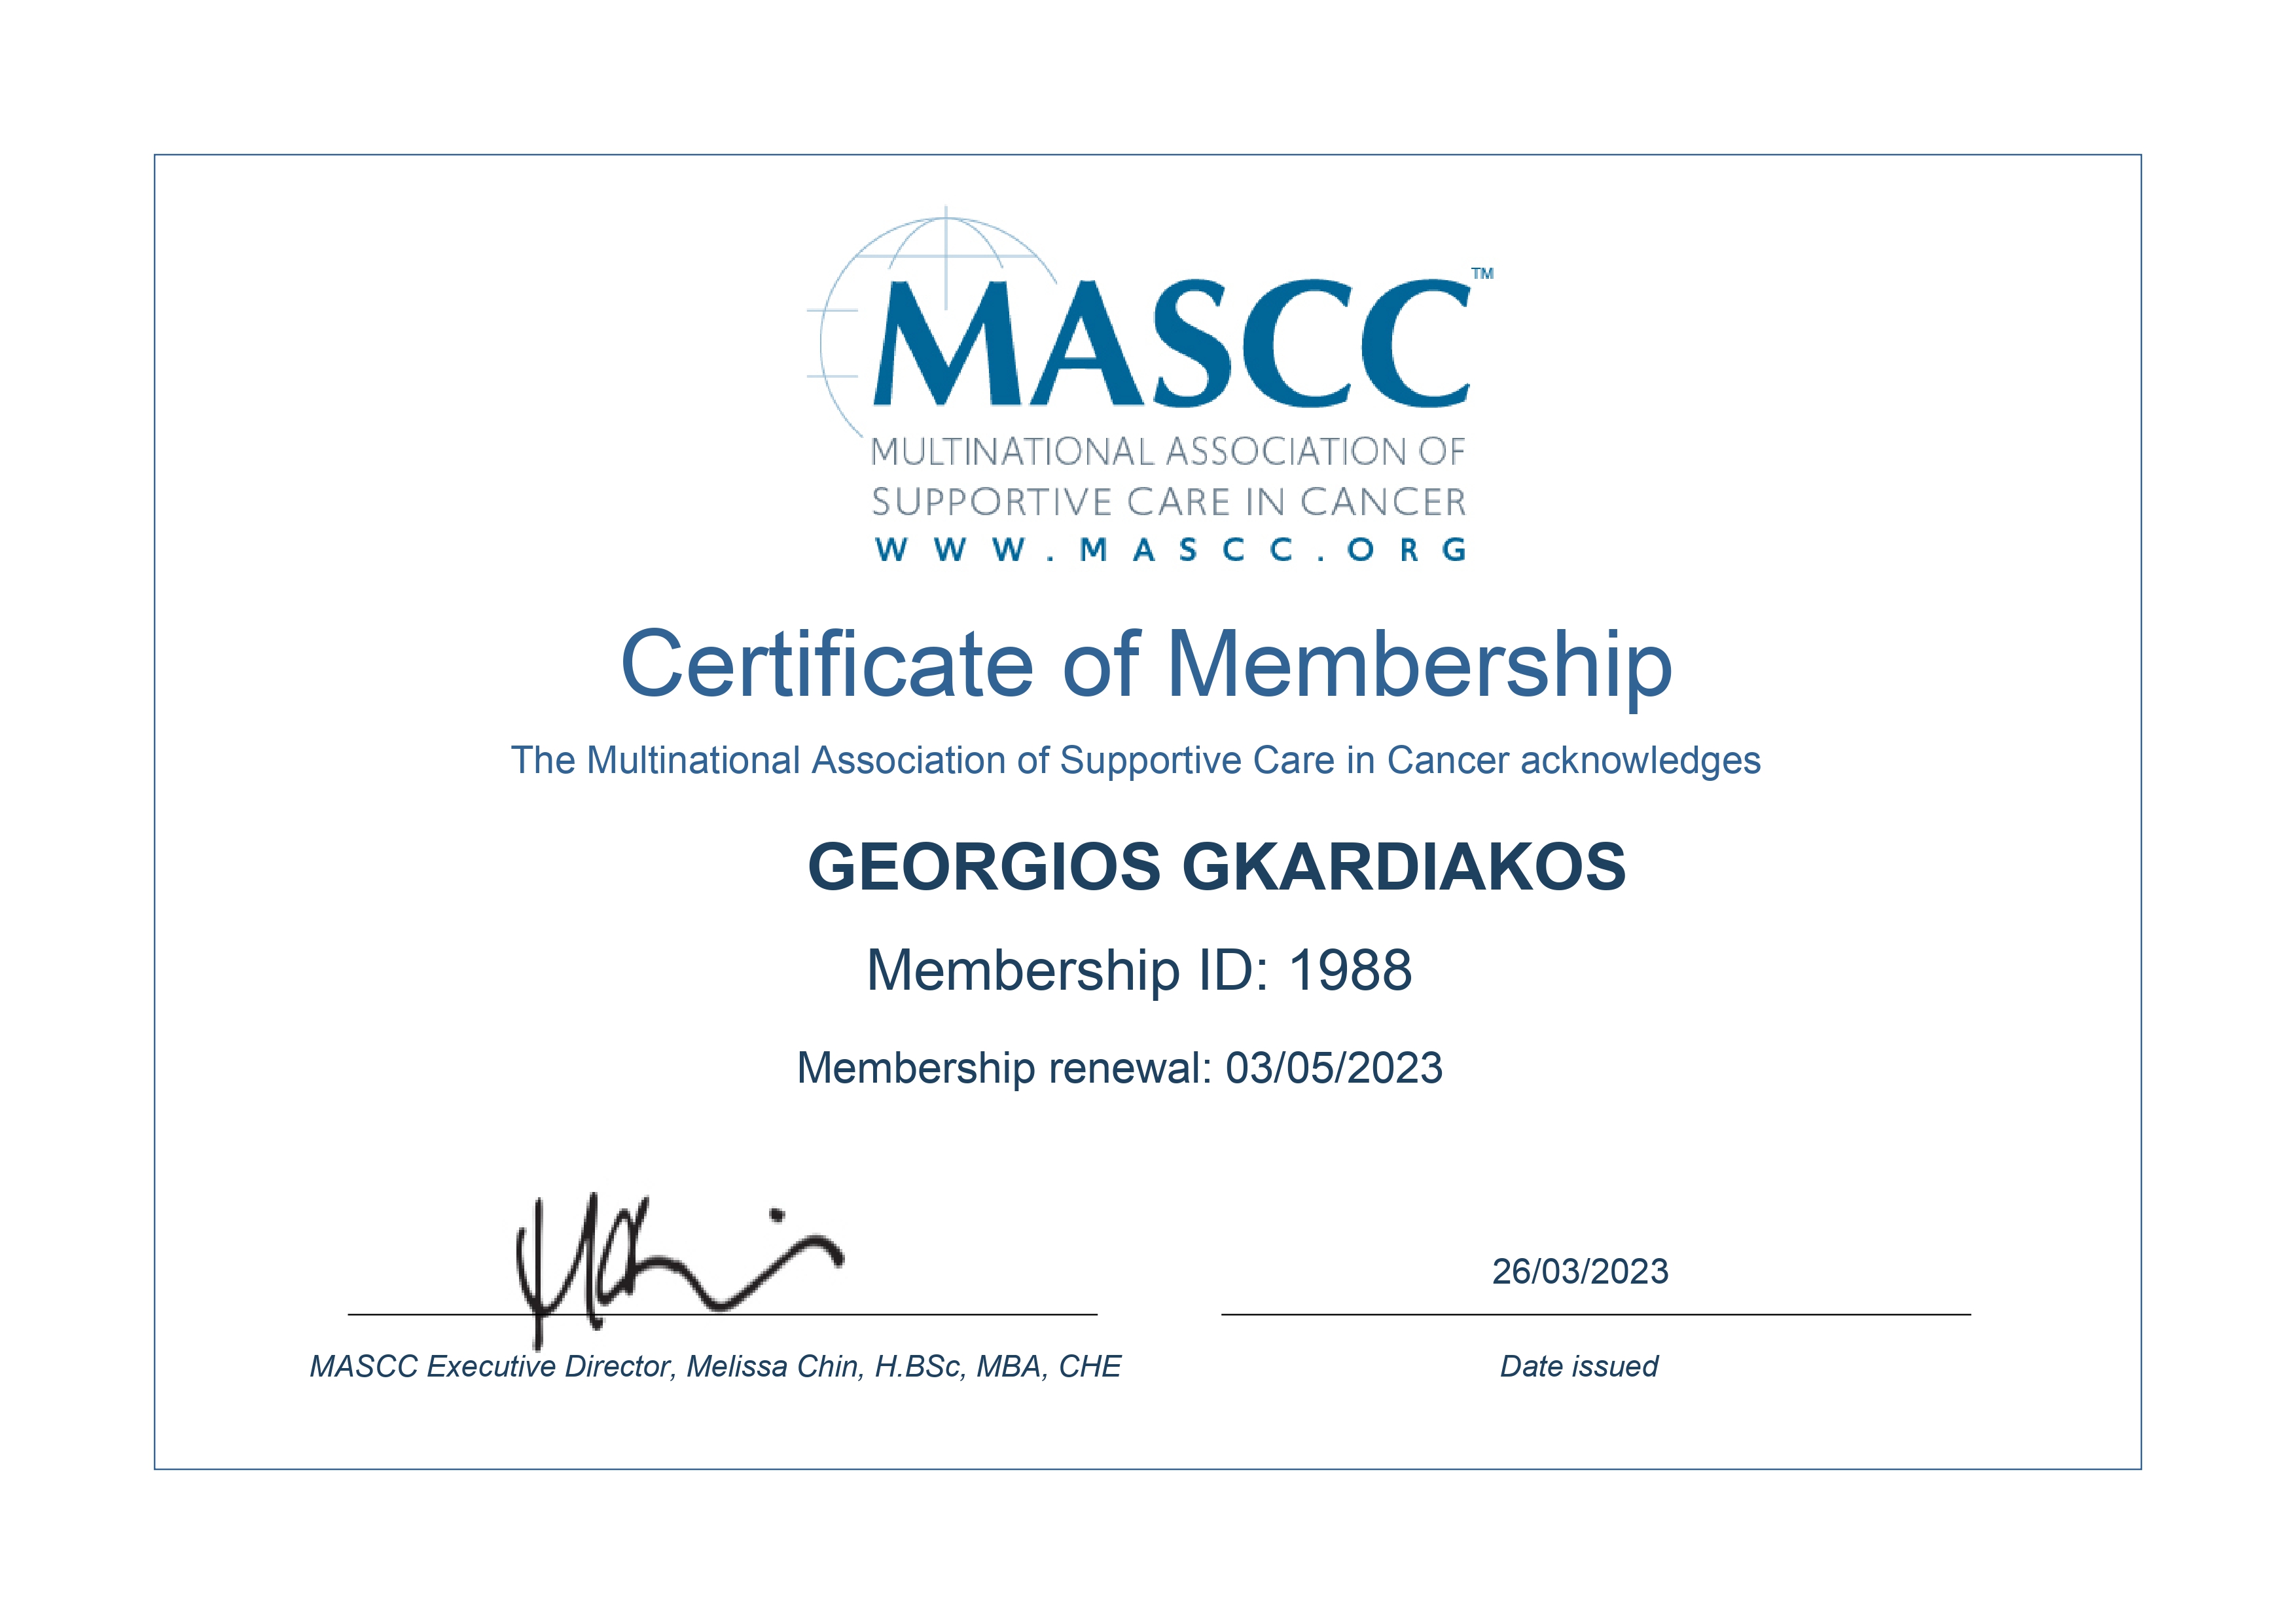 MASCC certificate GEORGIOS GKARDIAKOS 1 page 0001